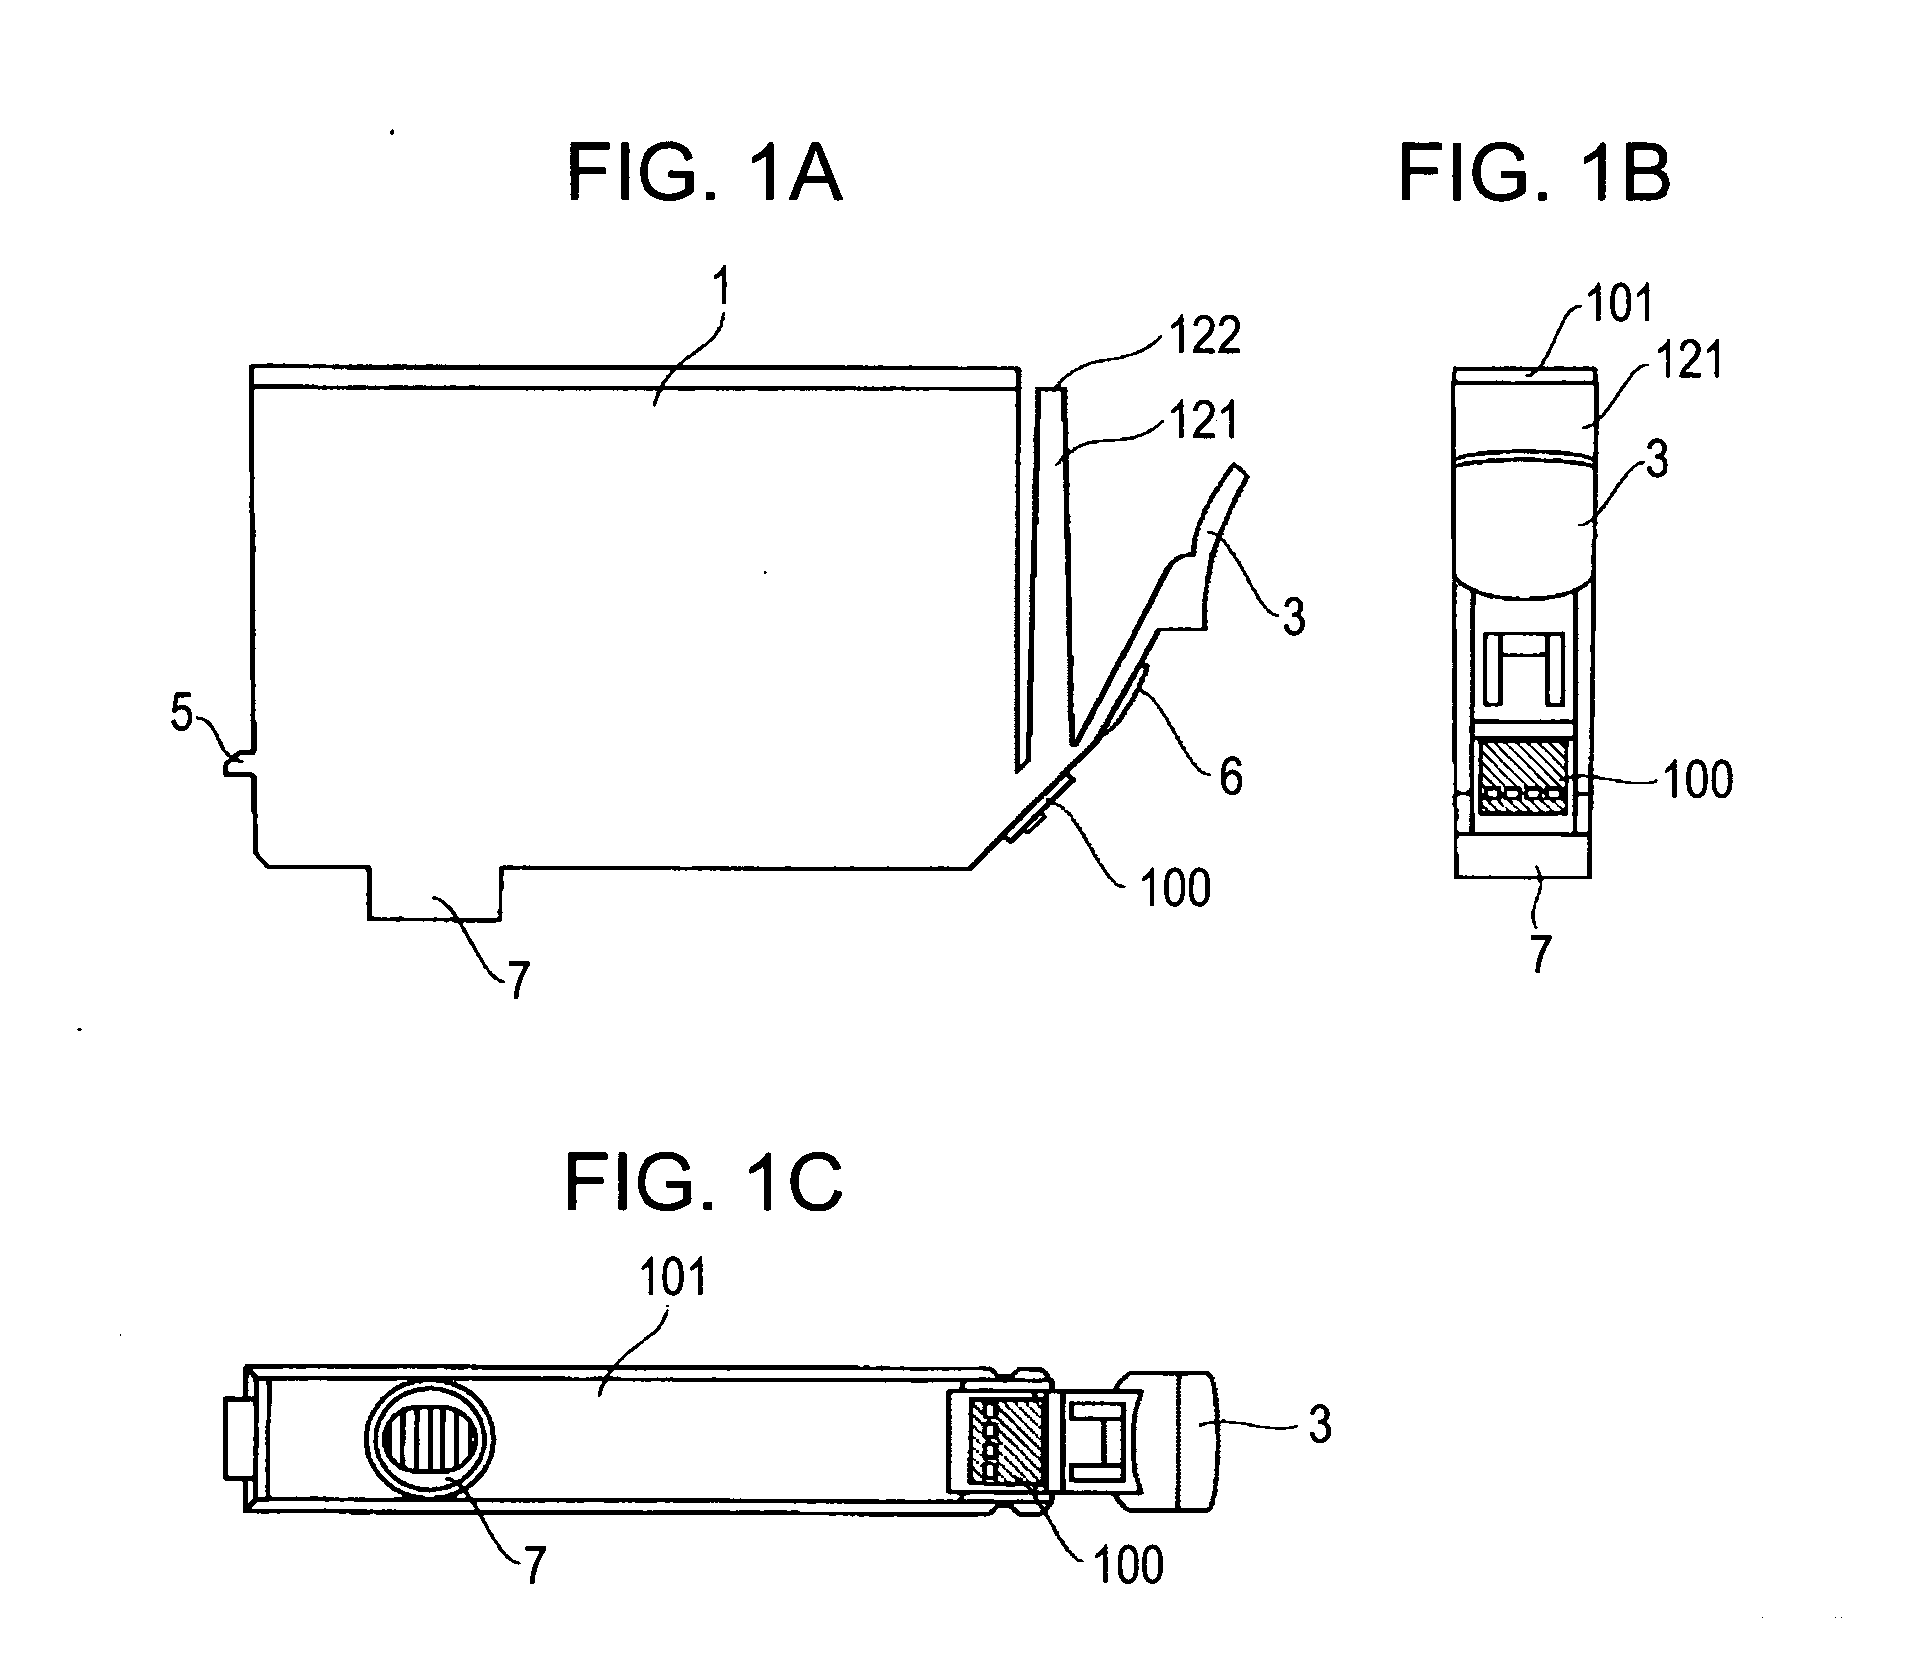 Liquid container and recording apparatus